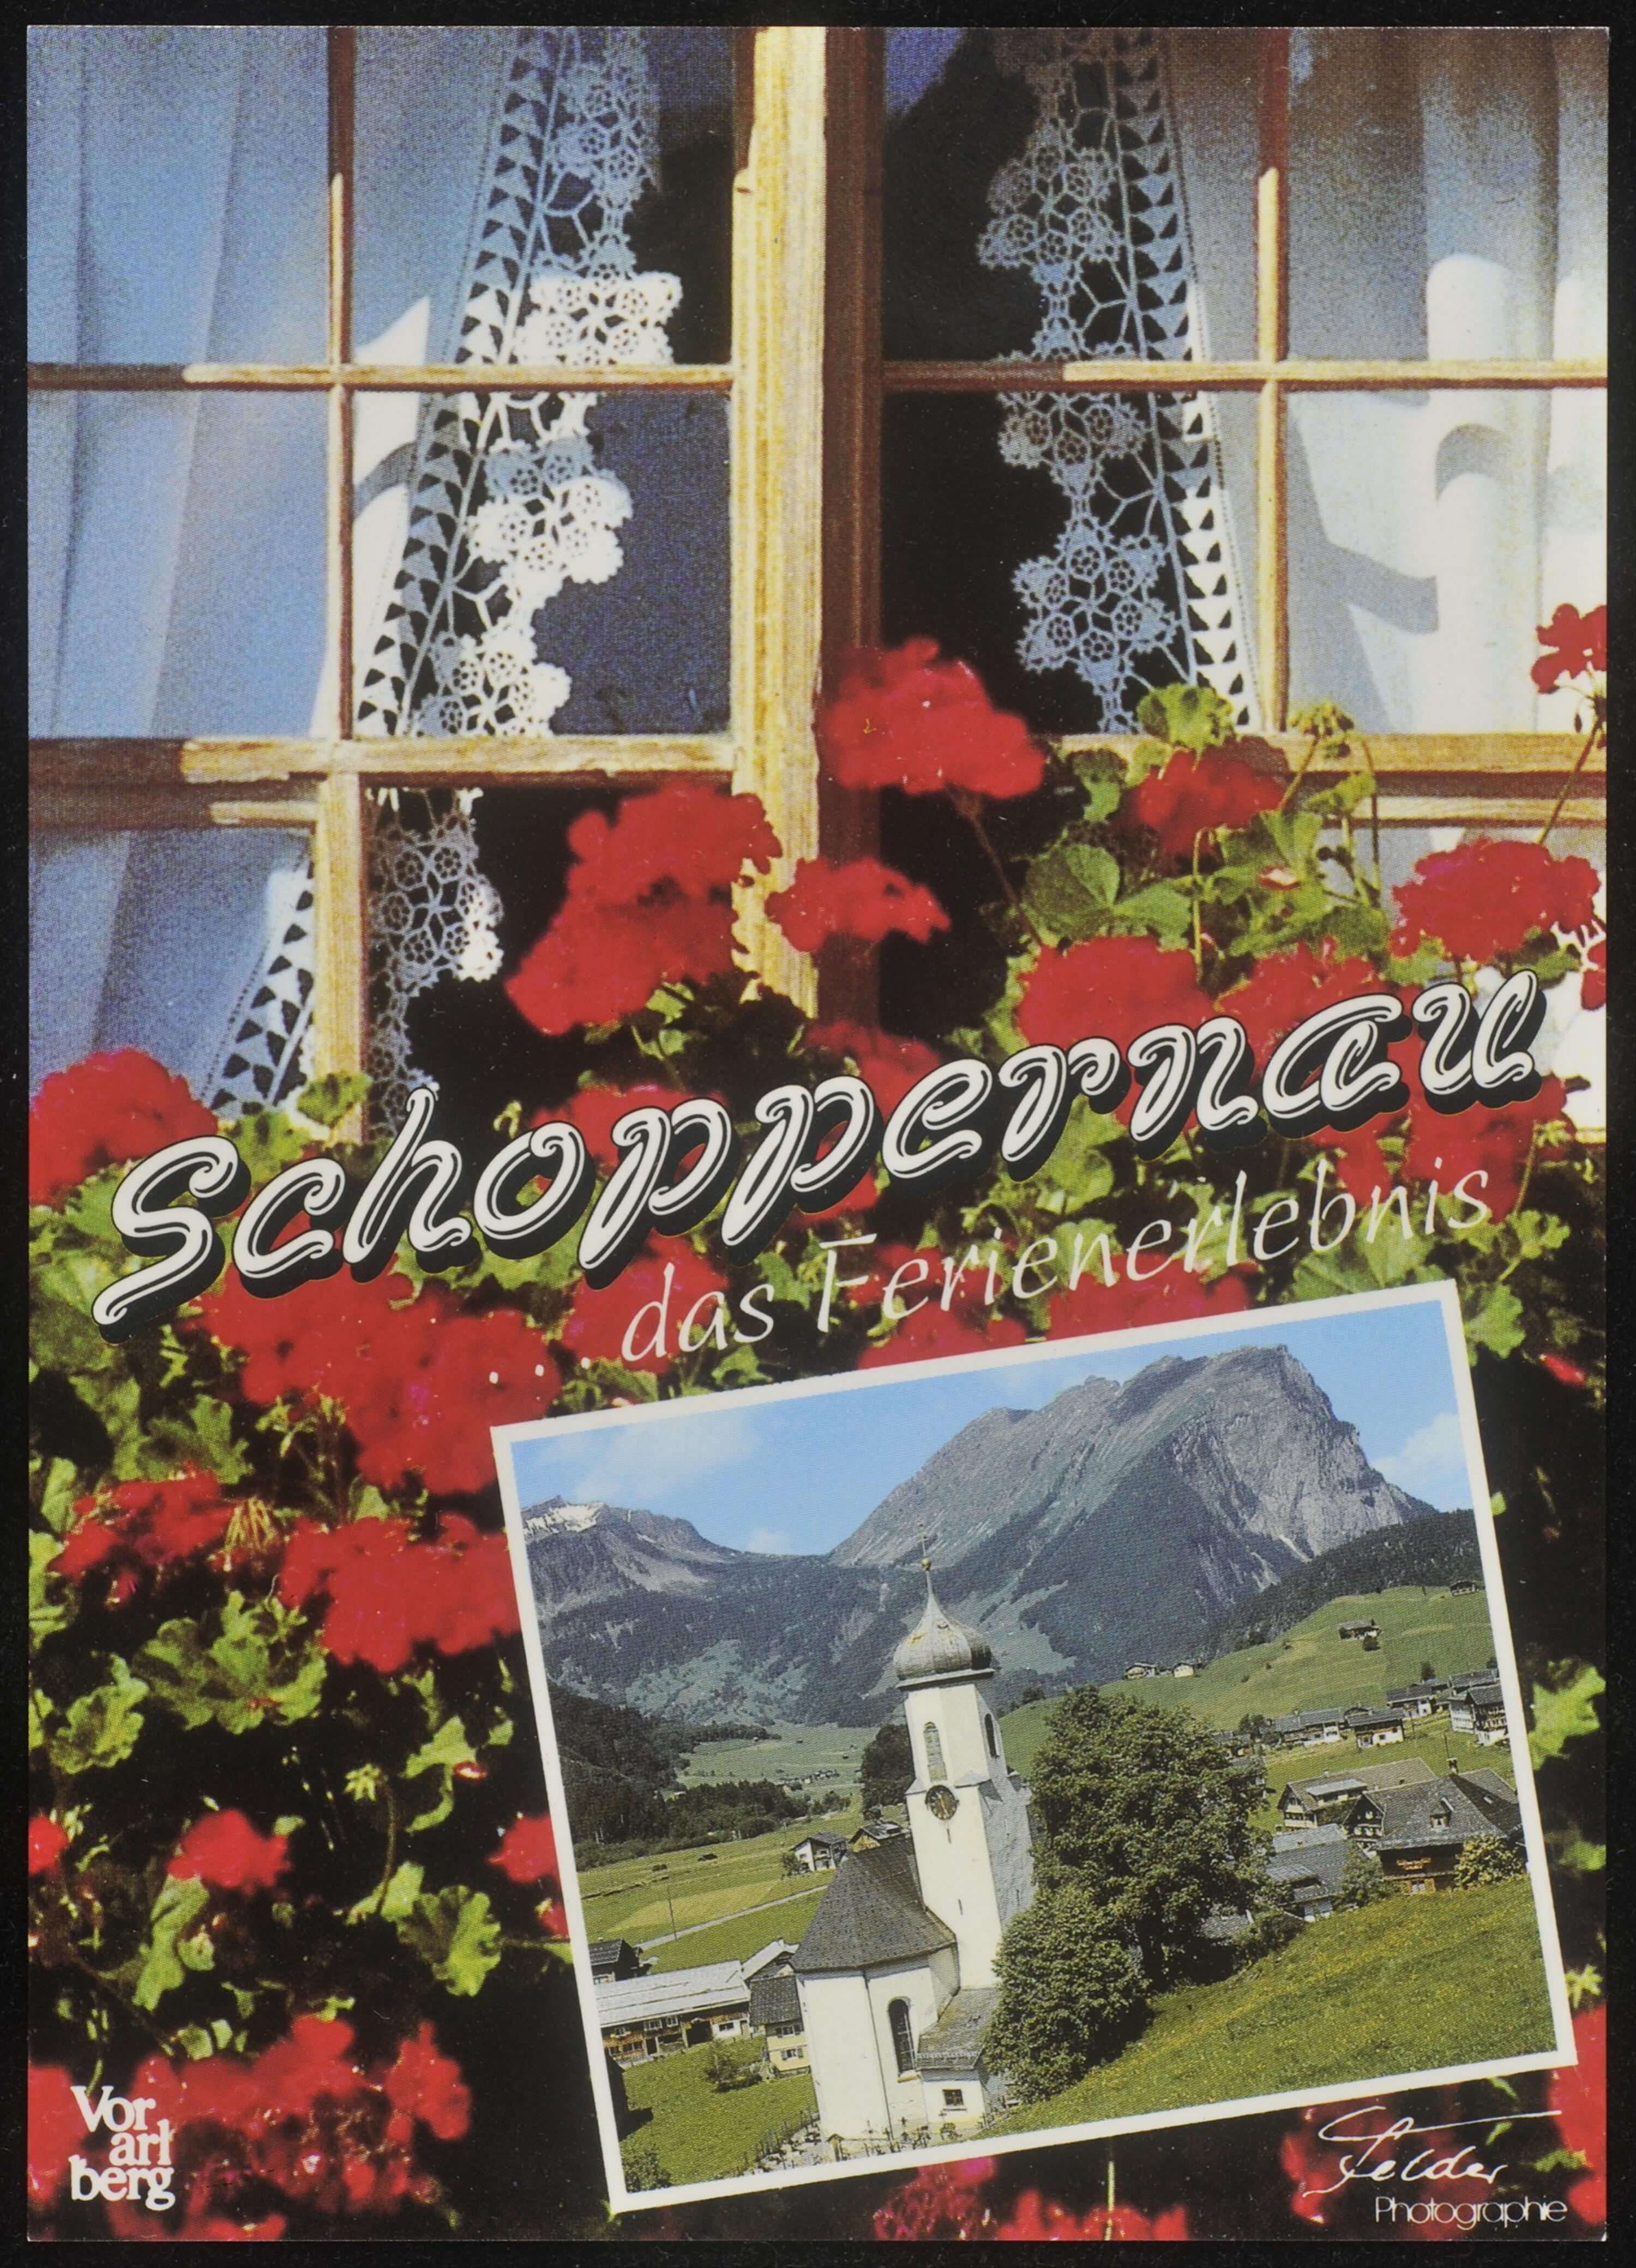 Schoppernau ... das Ferienerlebnis Vorarlberg></div>


    <hr>
    <div class=